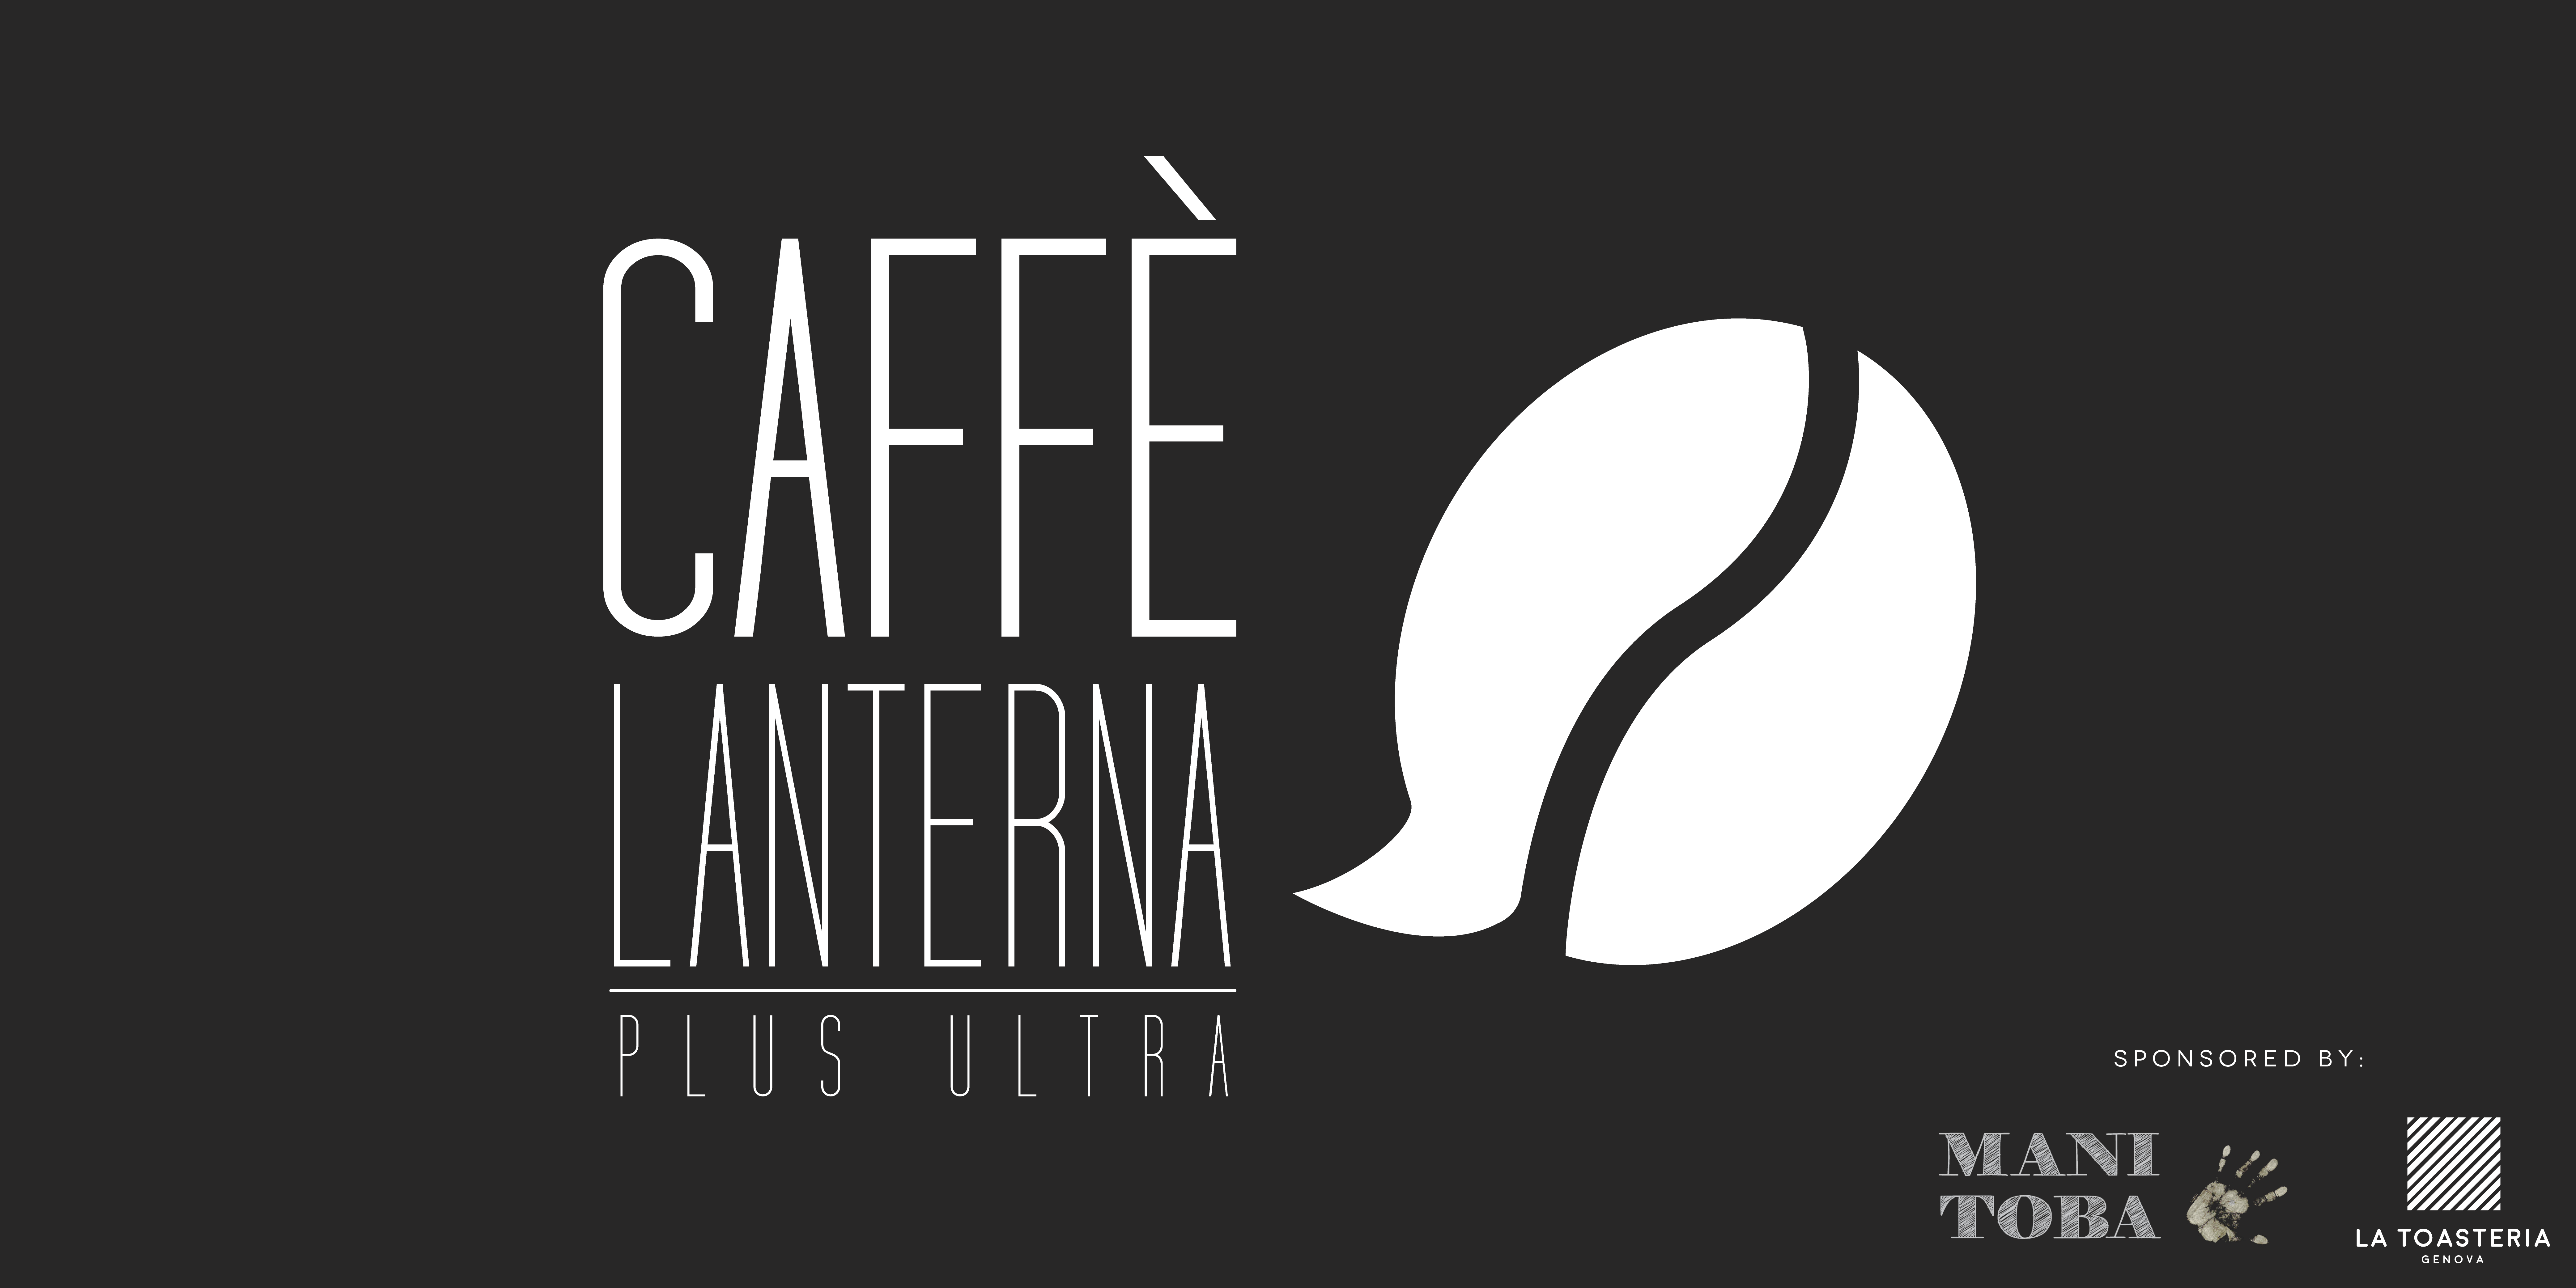 Caffè Lanterna